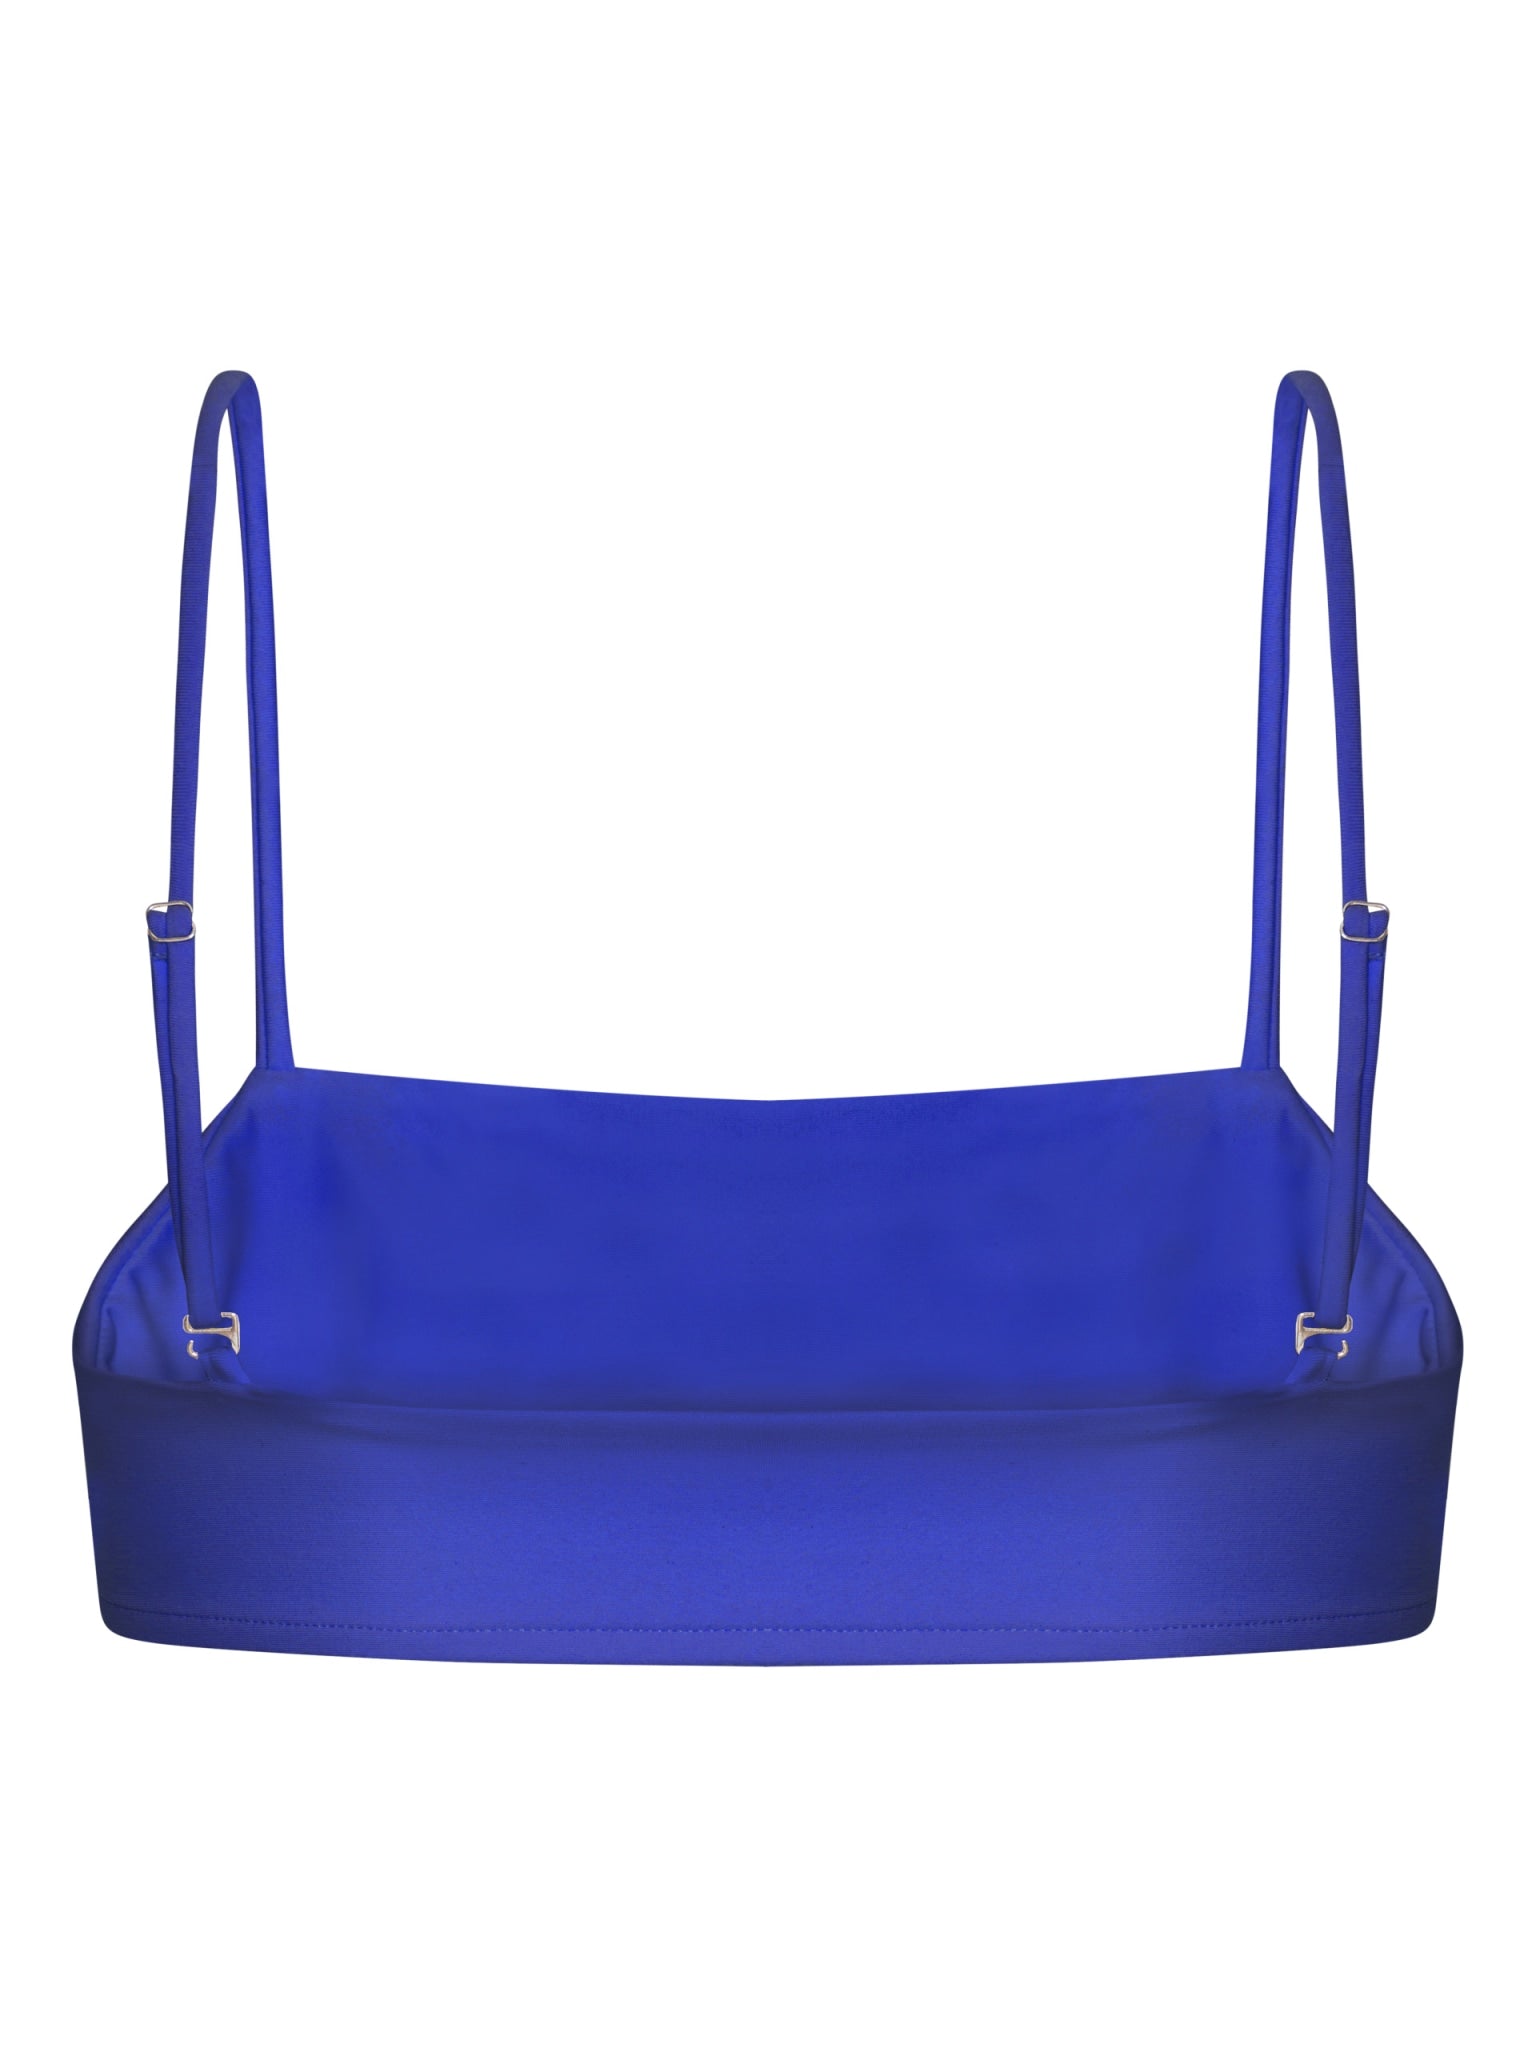 Sanur bandeau adjustable bikini top - Cartel Blue